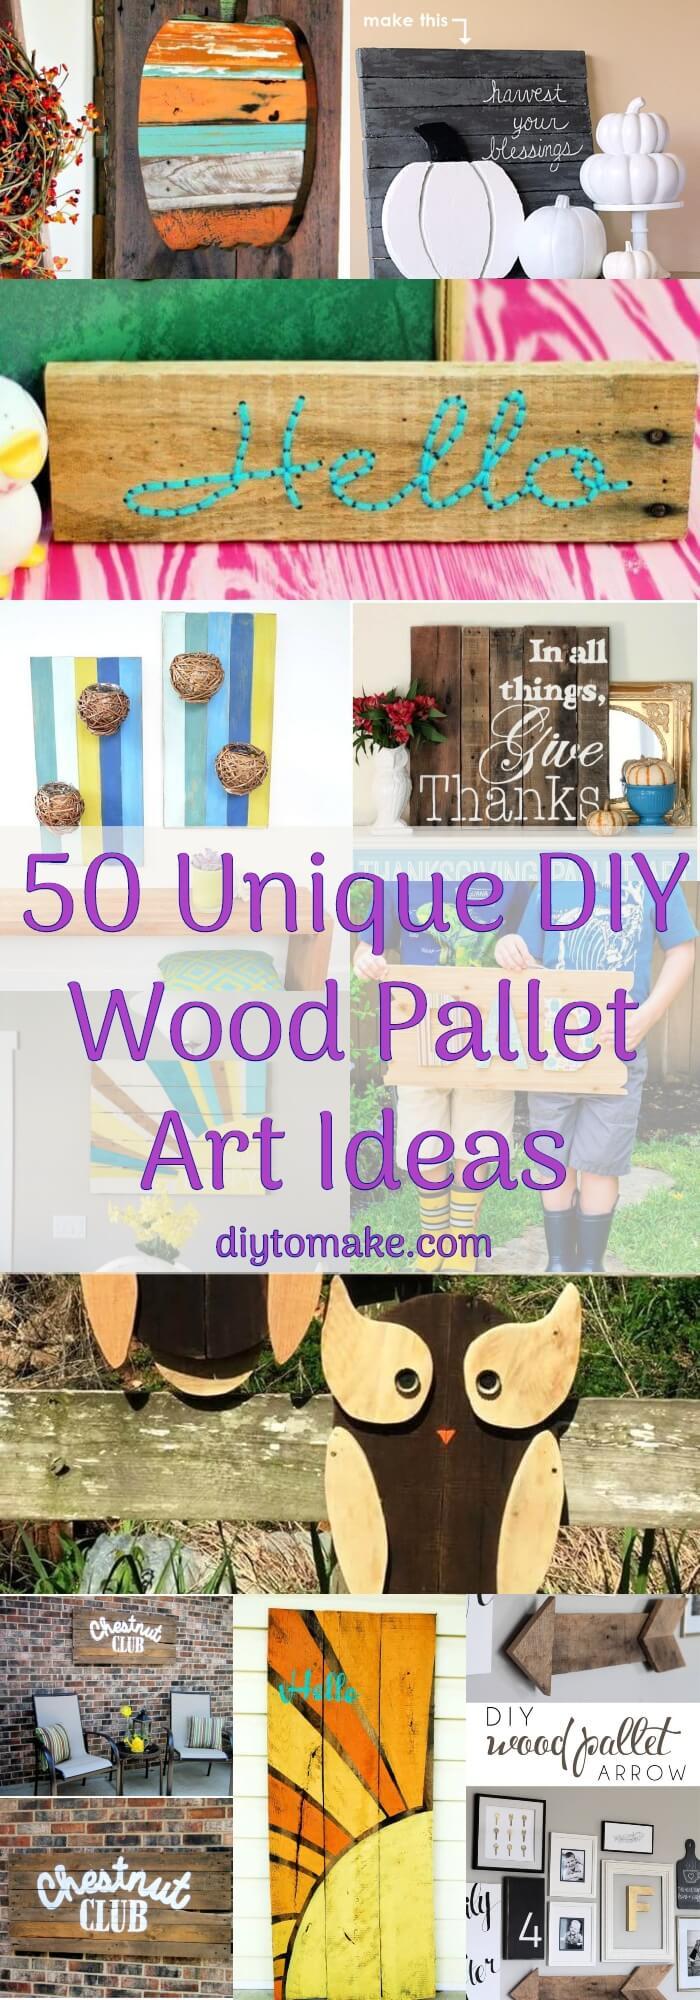 50 Unique DIY Wood Pallet Art Ideas